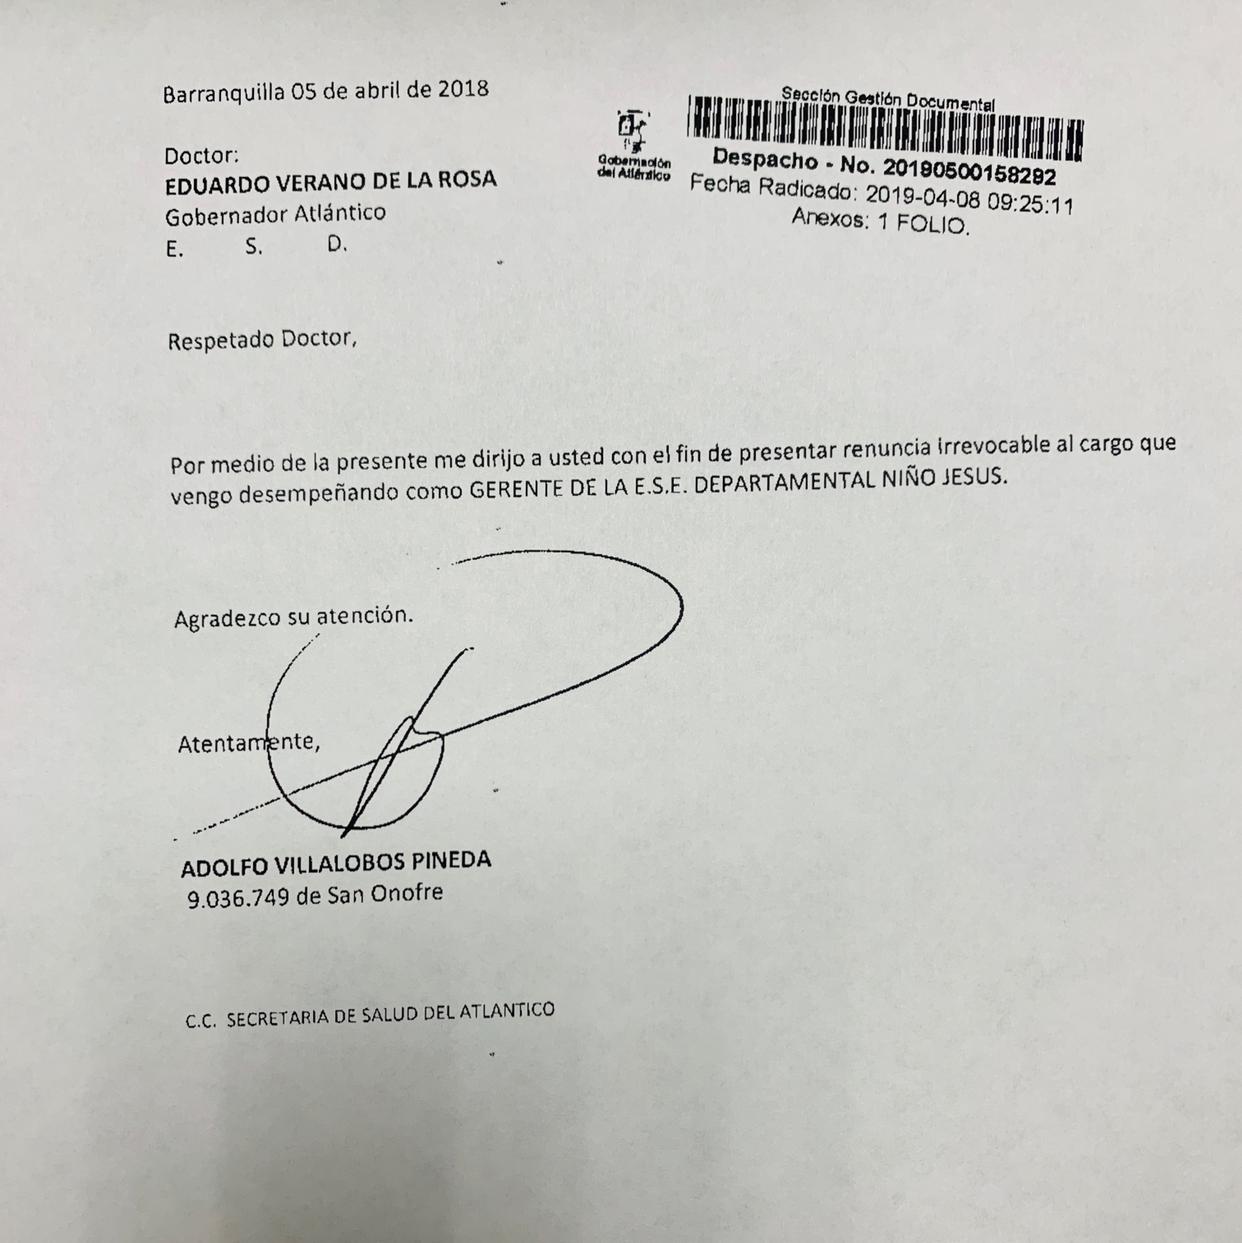 La renuncia que presentó el gerente Adolfo Villalobos Pineda al gobernador Eduardo Verano.